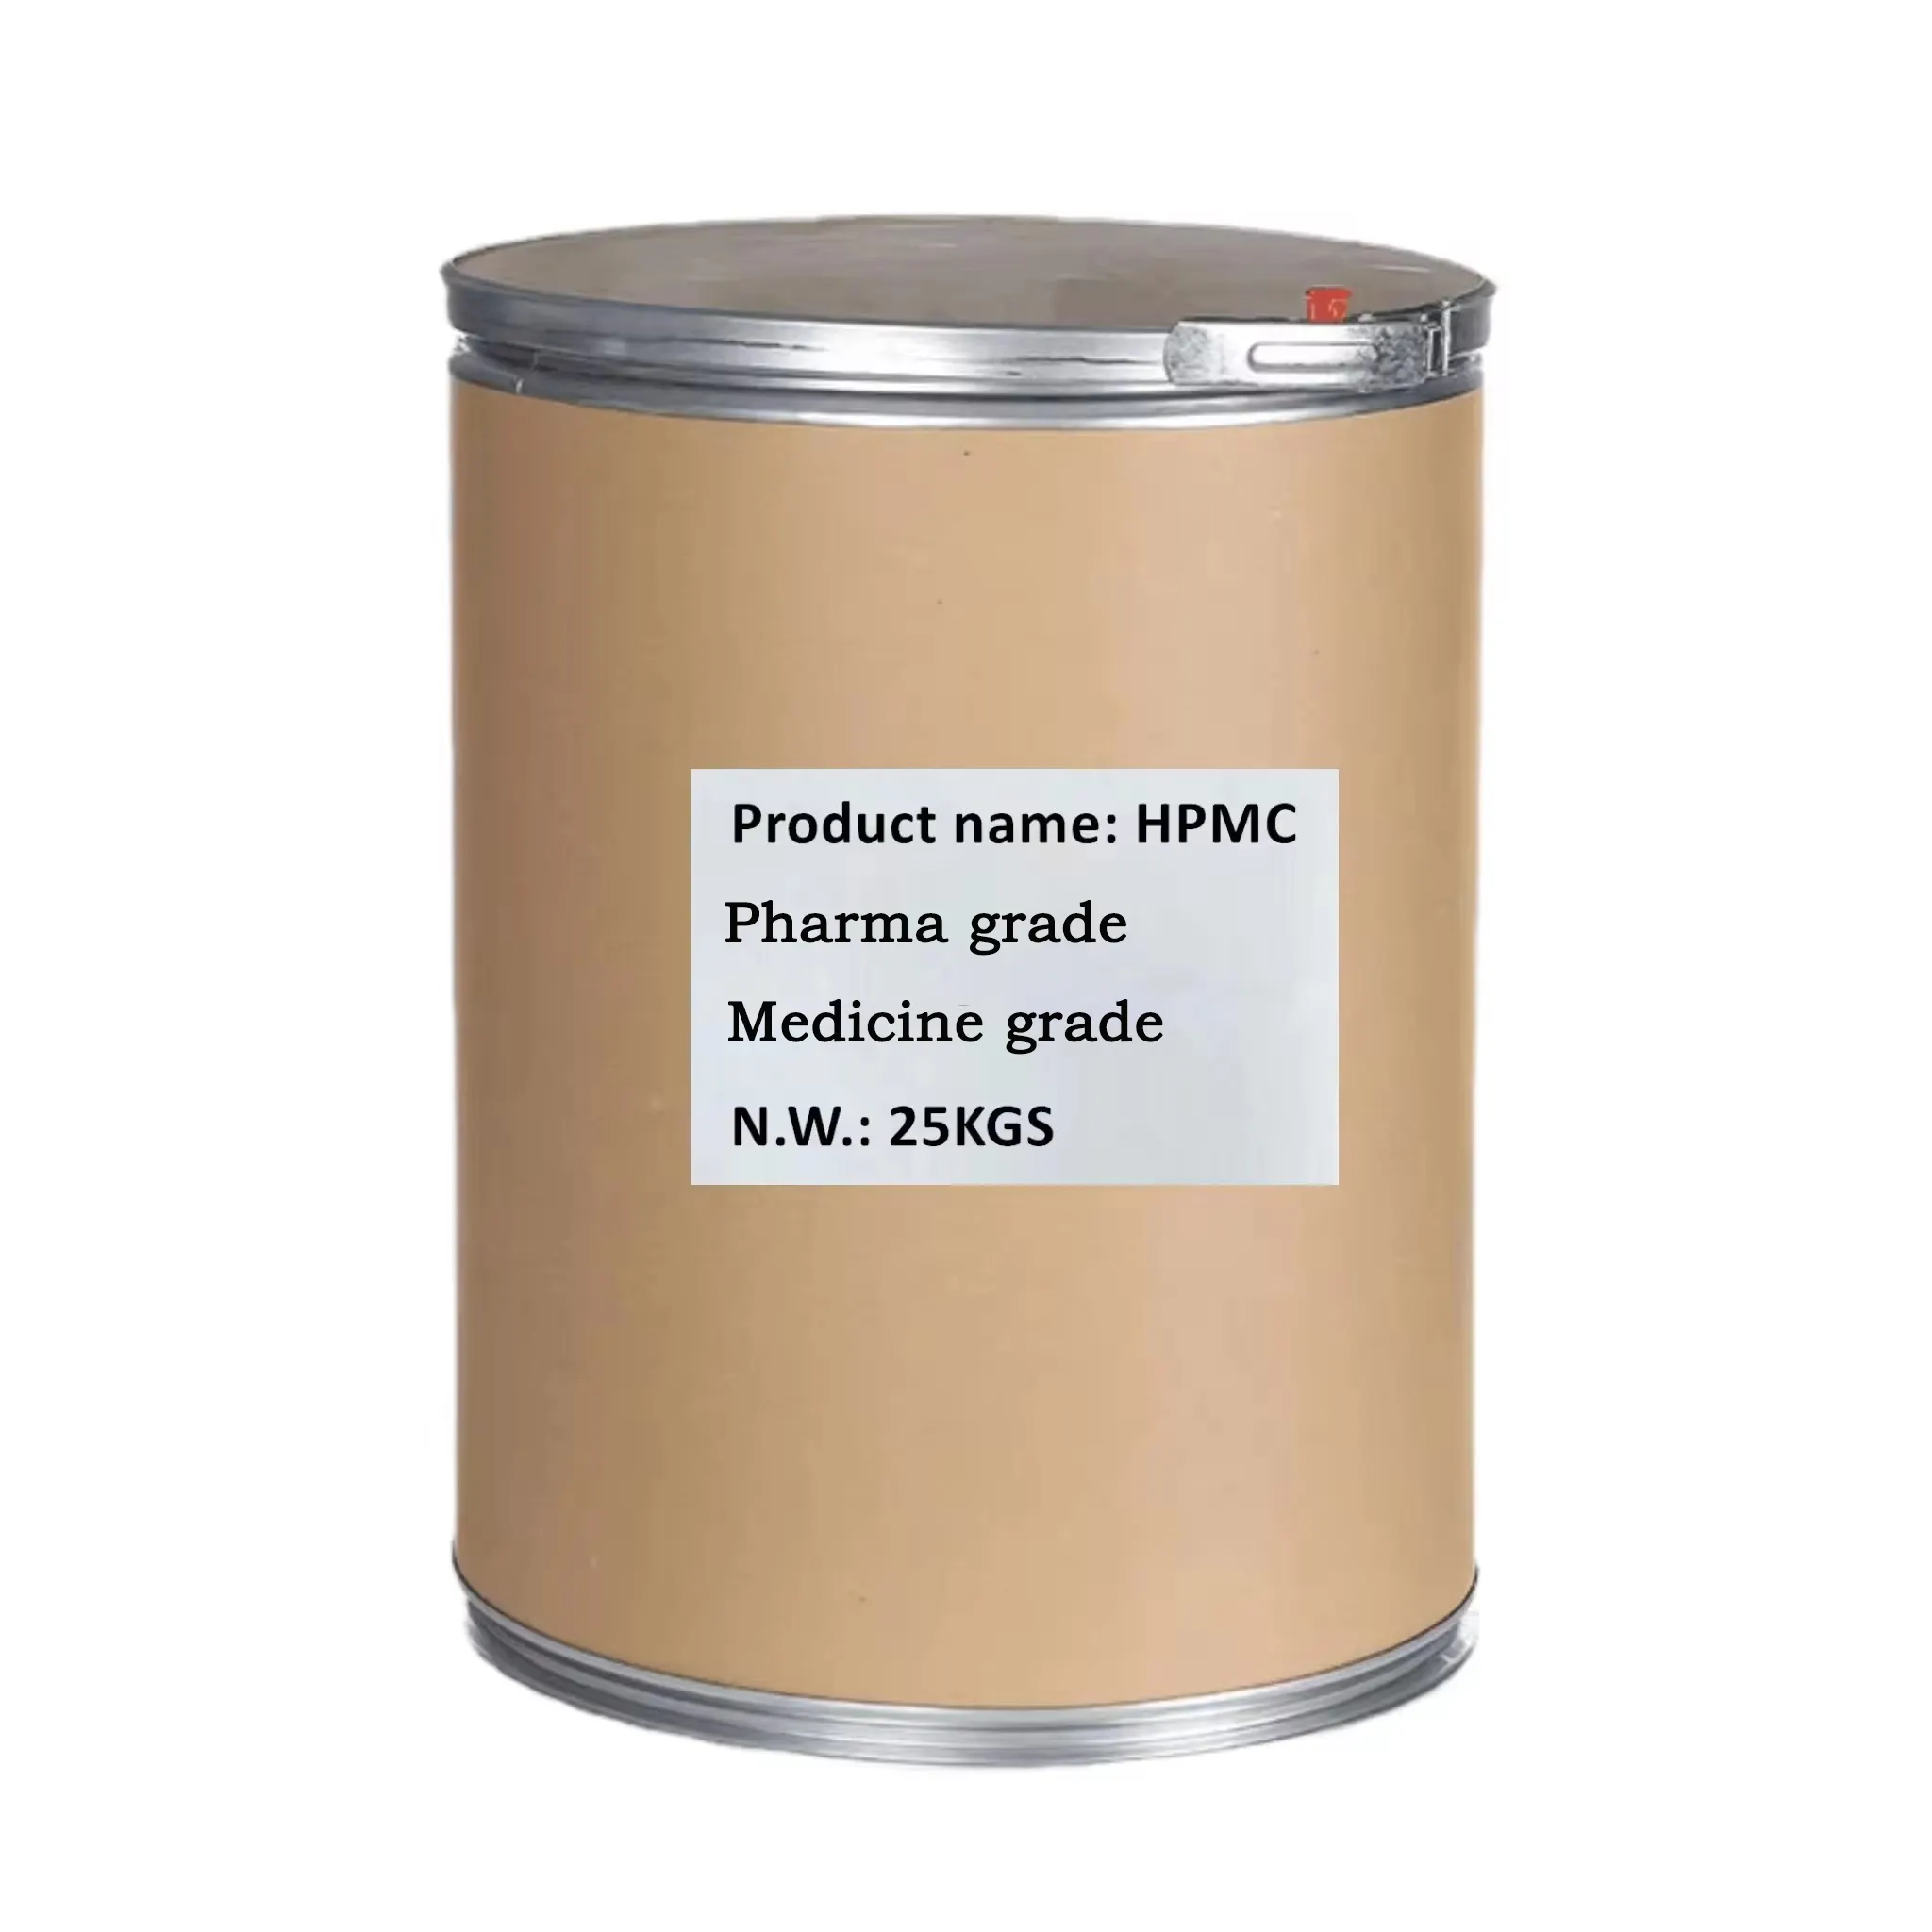 Pemasok nilai tinggi hpmc hidroksipropil metil selulosa zat kimia untuk semen dan lem ubin keramik